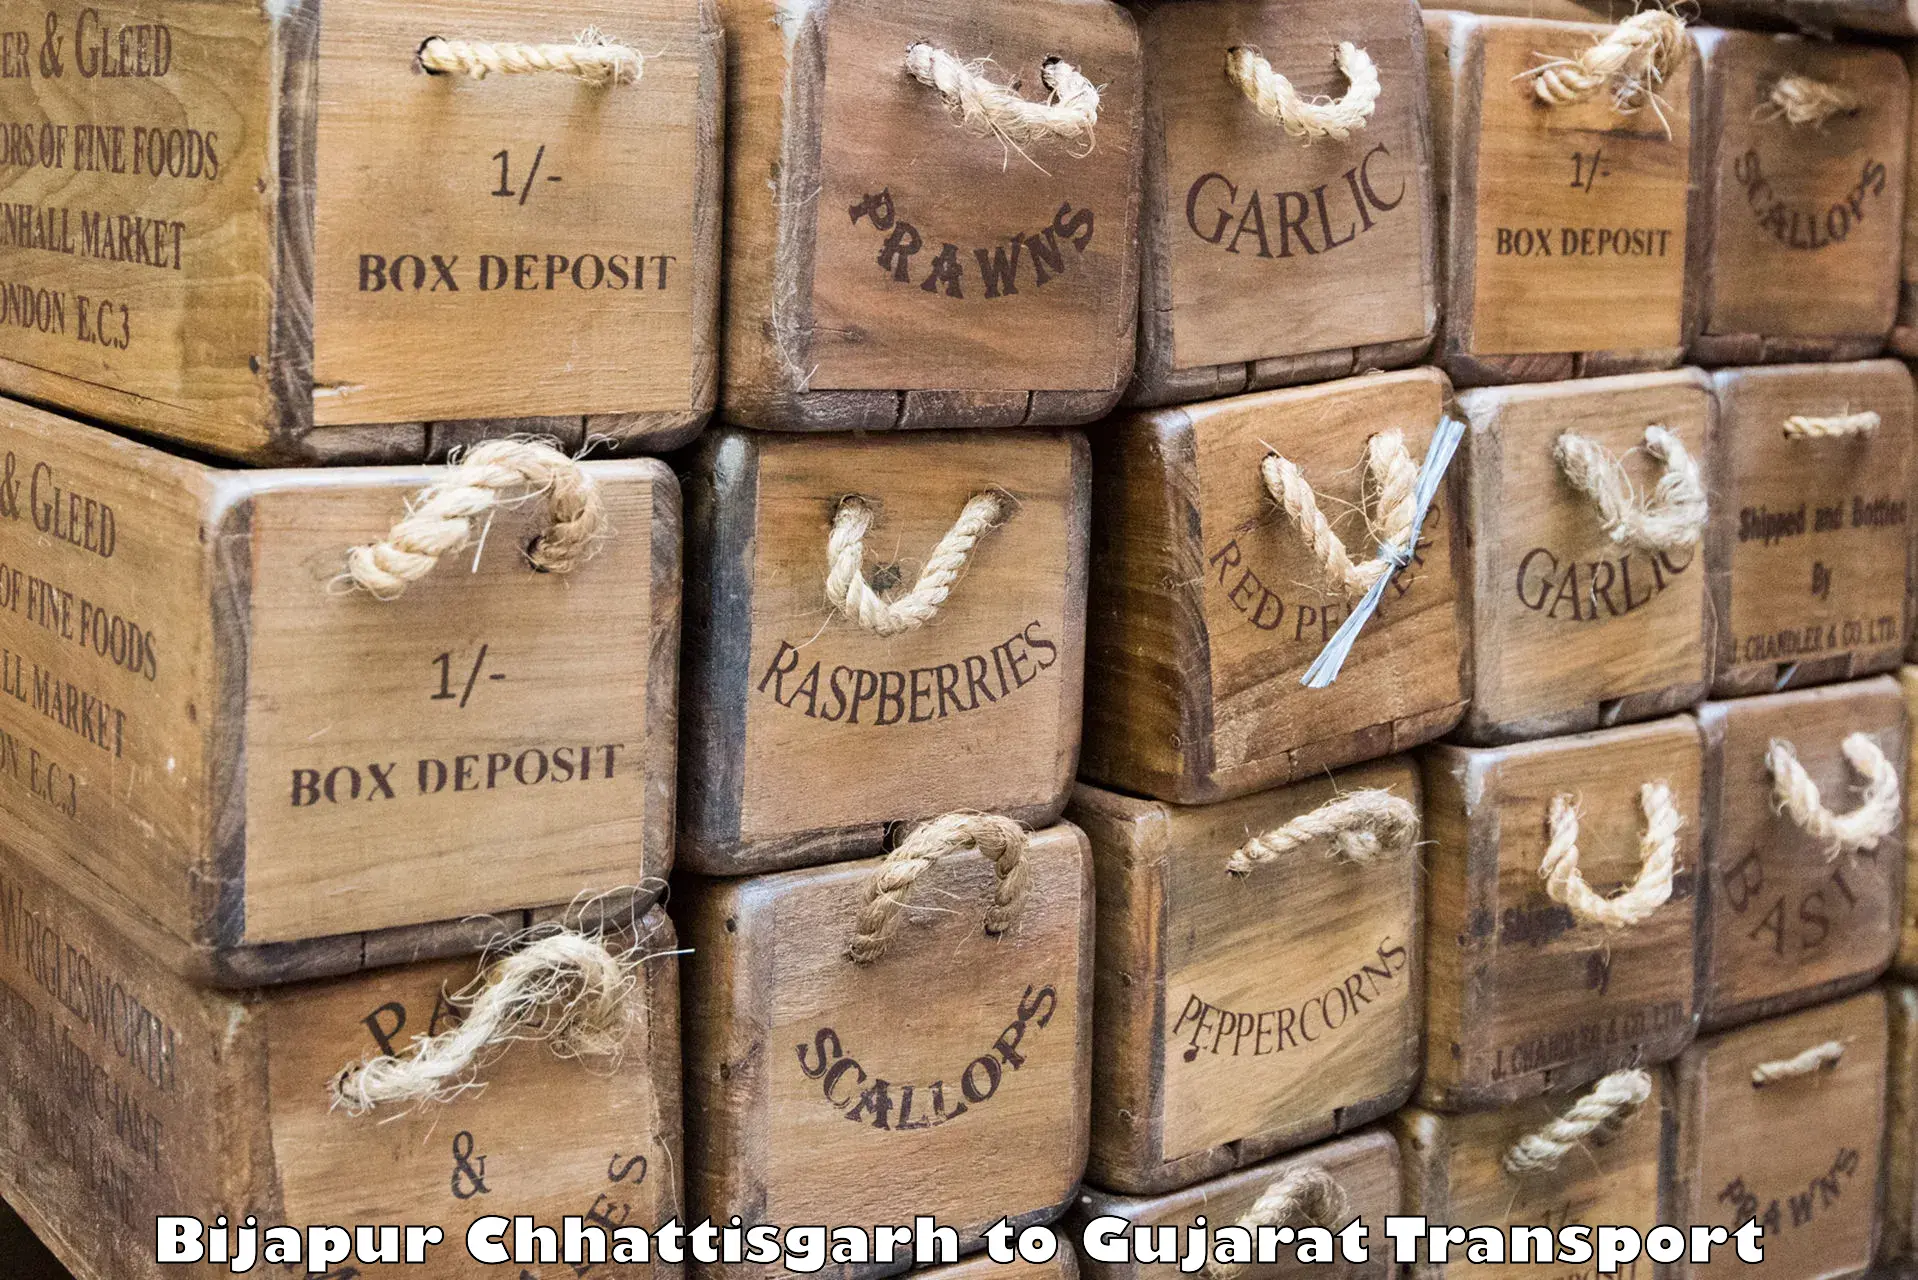 Delivery service Bijapur Chhattisgarh to Godhra